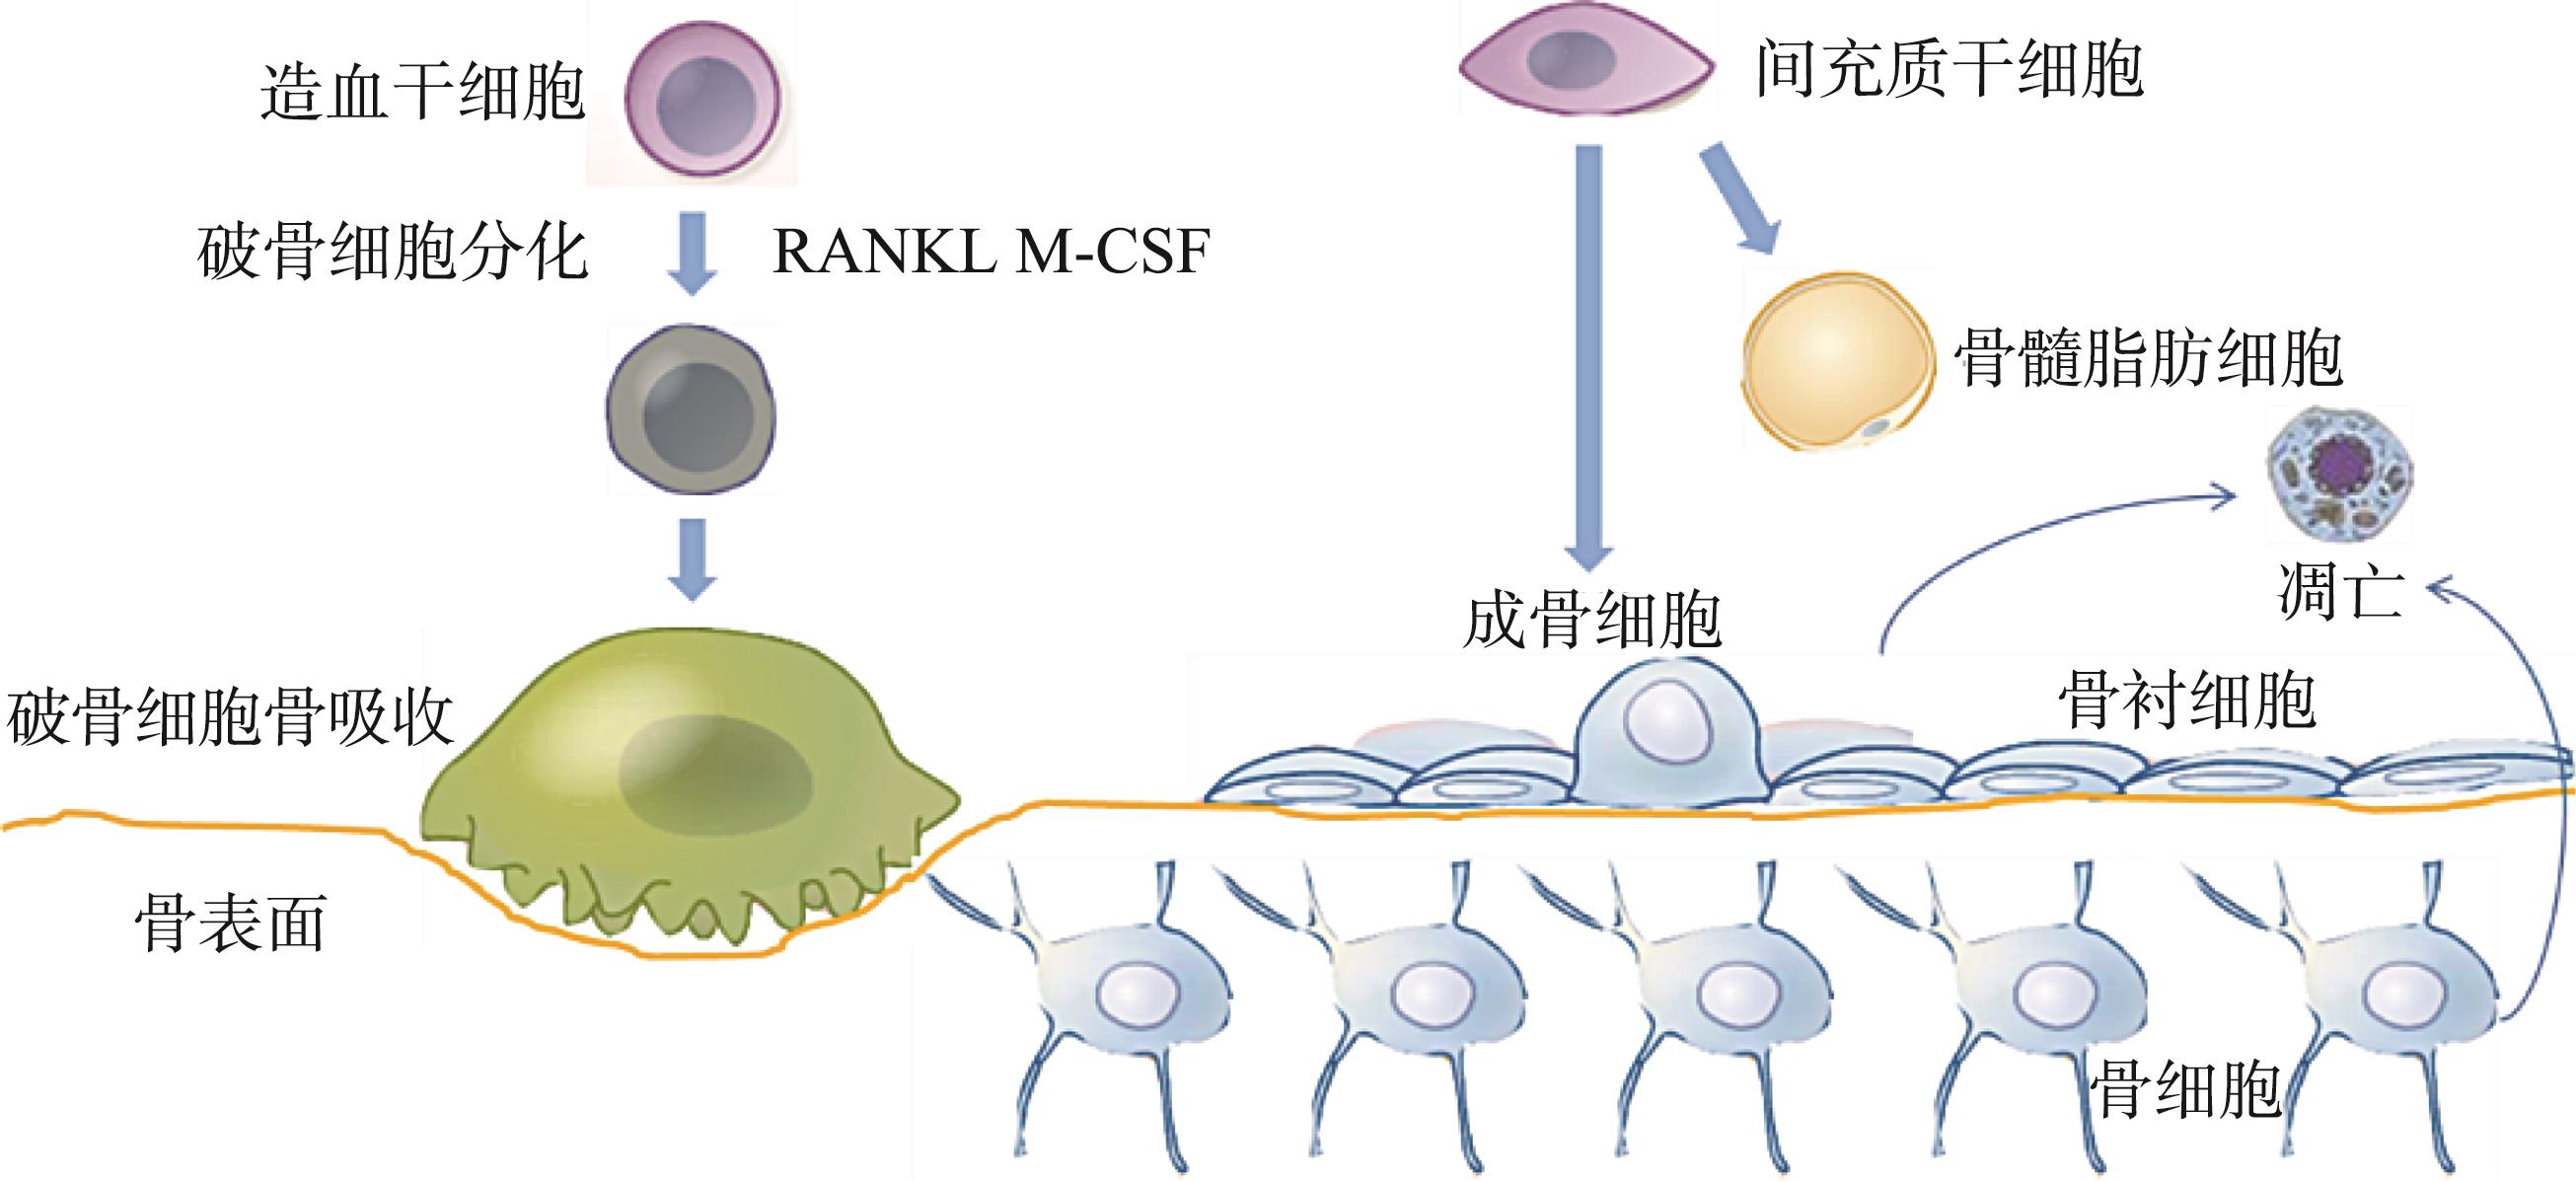 深圳先进院在声控内源性骨髓间充质干细胞原位修复骨缺损研究取得进展--中国科学院广州分院